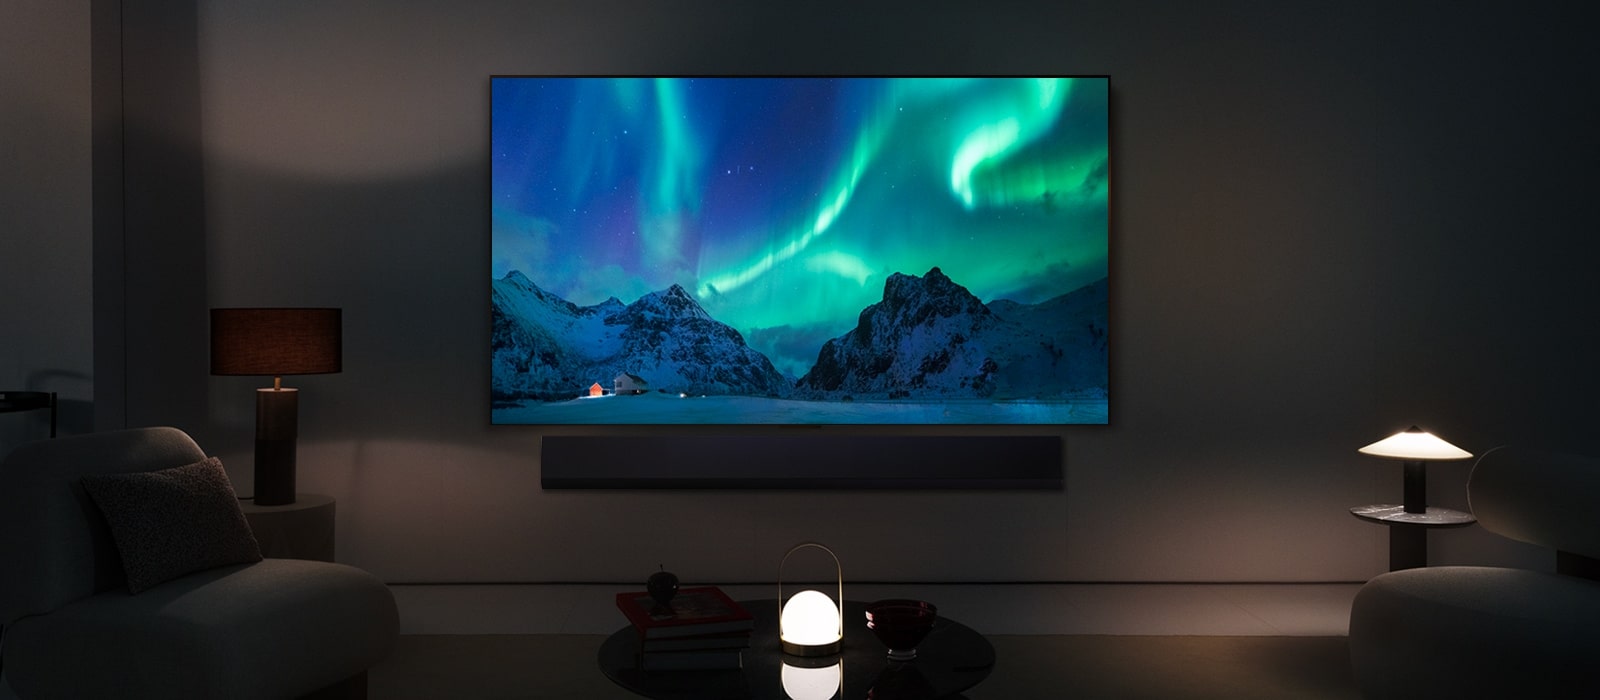 LG OLED TV ir LG garso juosta modernioje gyvenamojoje patalpoje nakties metu. Poliarinės pašvaistės vaizdas ekrane rodomas idealiu ryškumo lygiu.